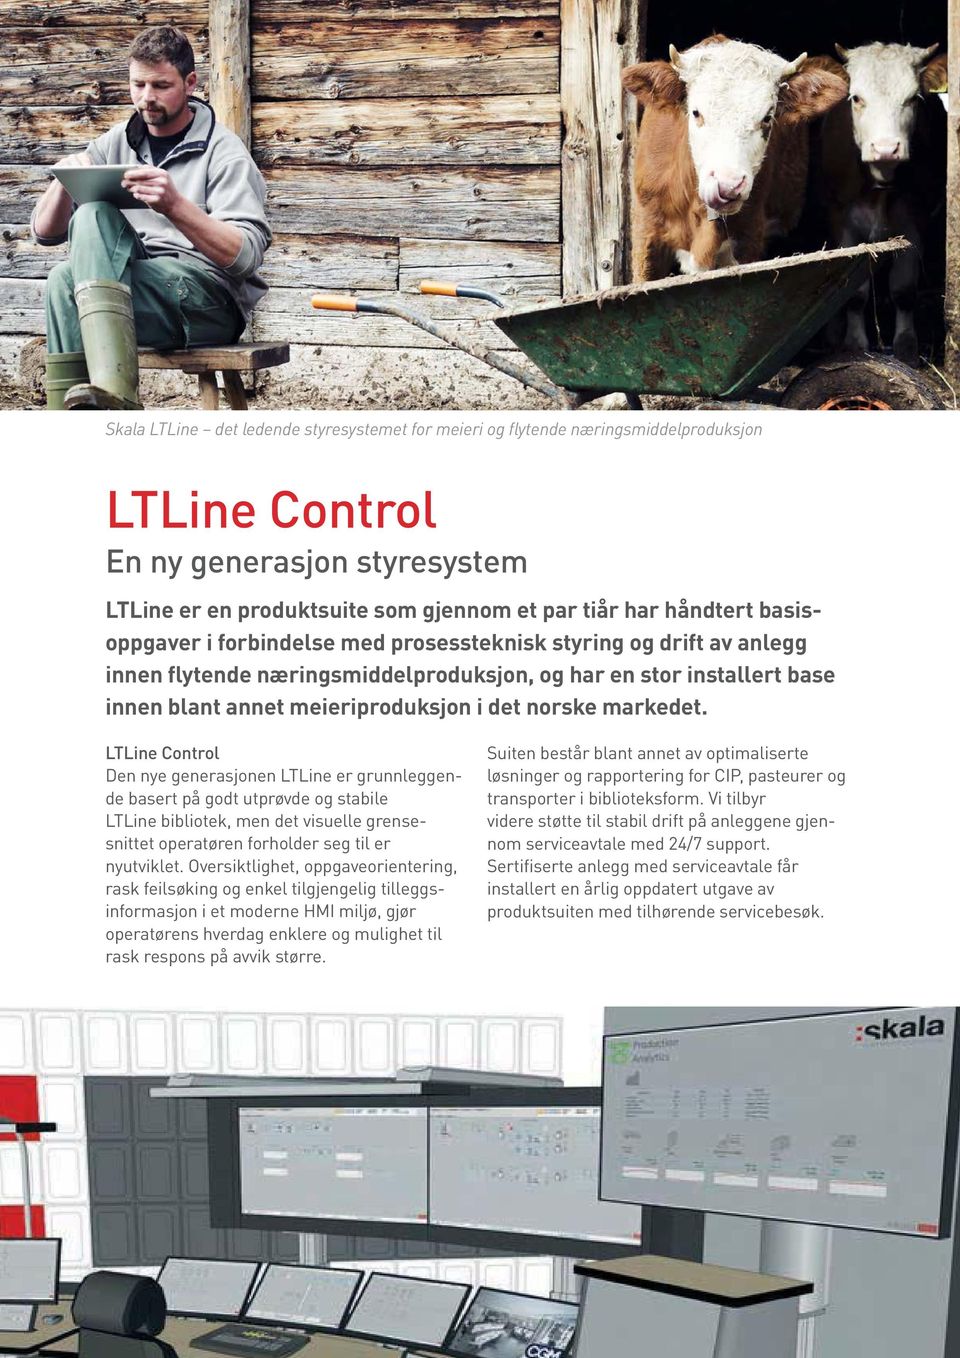 markedet. LTLine Control Den nye generasjonen LTLine er grunnleggende basert på godt utprøvde og stabile LTLine bibliotek, men det visuelle grensesnittet operatøren forholder seg til er nyutviklet.